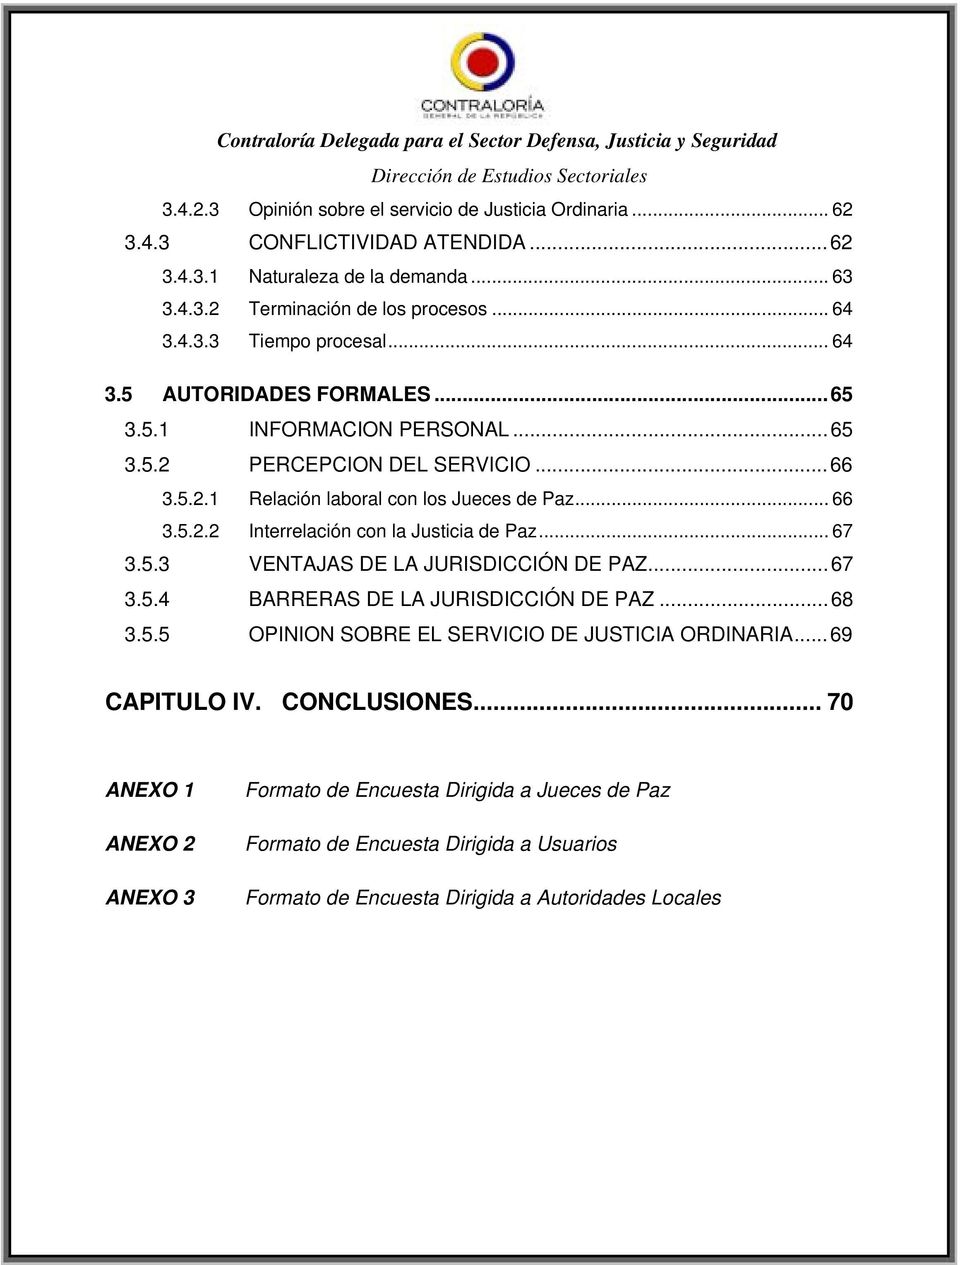 .. 67 3.5.3 VENTAJAS DE LA JURISDICCIÓN DE PAZ...67 3.5.4 BARRERAS DE LA JURISDICCIÓN DE PAZ...68 3.5.5 OPINION SOBRE EL SERVICIO DE JUSTICIA ORDINARIA... 69 CAPITULO IV. CONCLUSIONES.